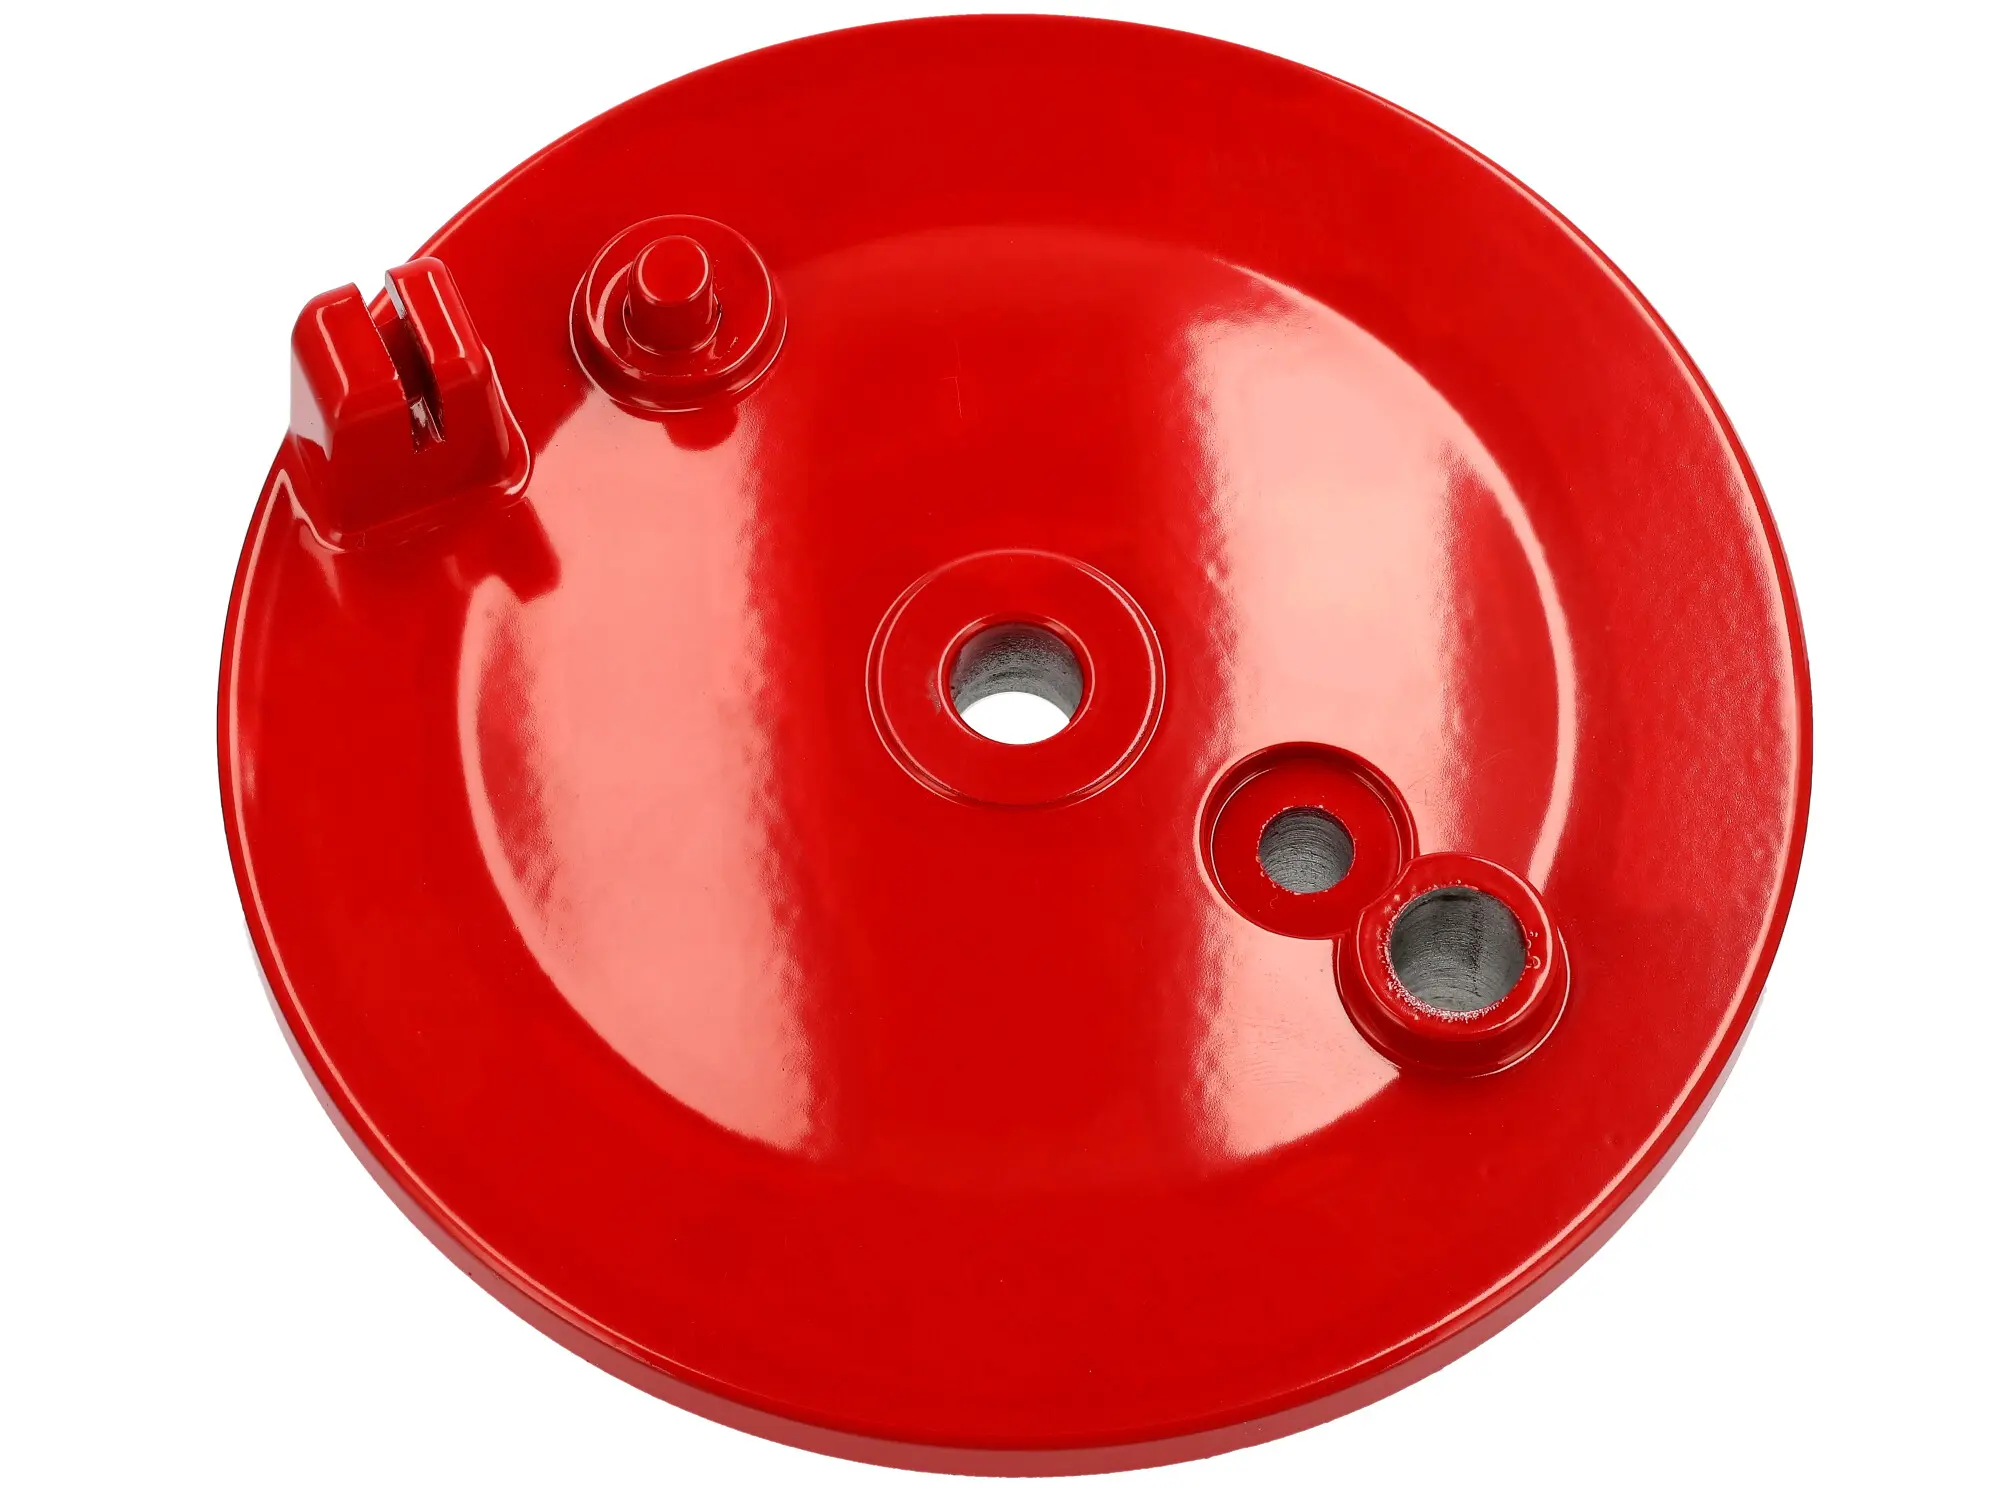 Bremsschild hinten, Rot, mit Bohrung, mit Schlitz - für Simson KR51/1 Schwalbe, SR4-2 Star, SR4-3 Sperber, SR4-4 Habicht, Art.-Nr.: 10073599 - Bild 1